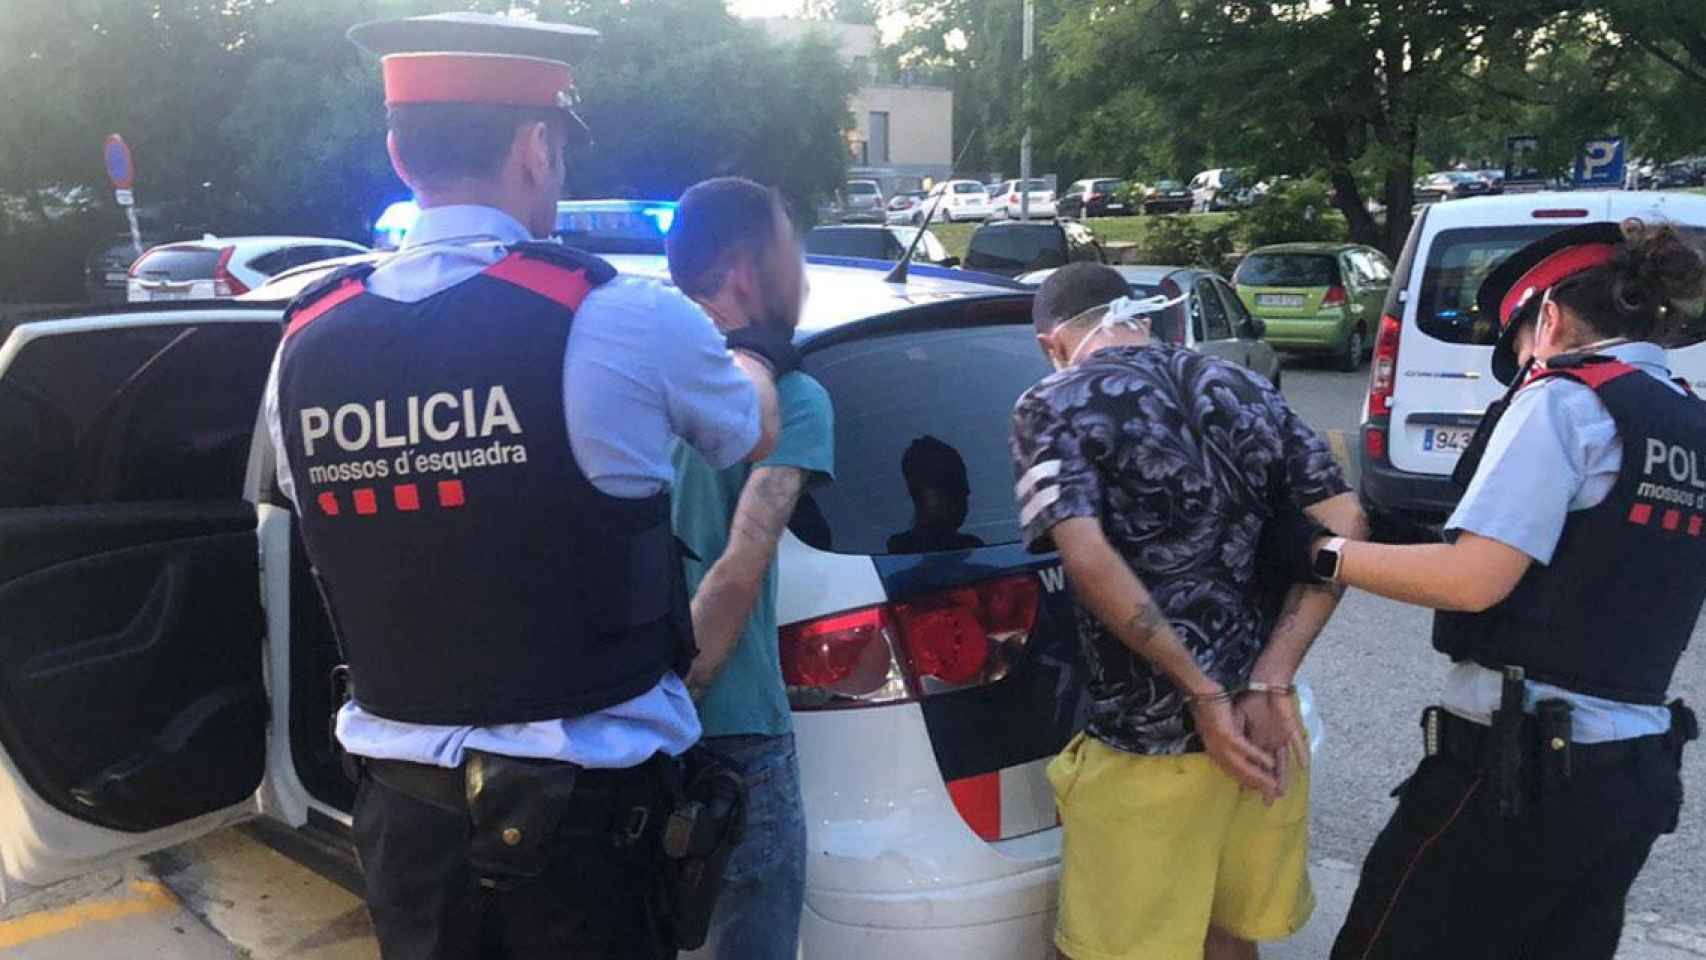 Atracadores detenidos por robos en Sant Cugat, Barcelona / MOSSOS D'ESQUADRA